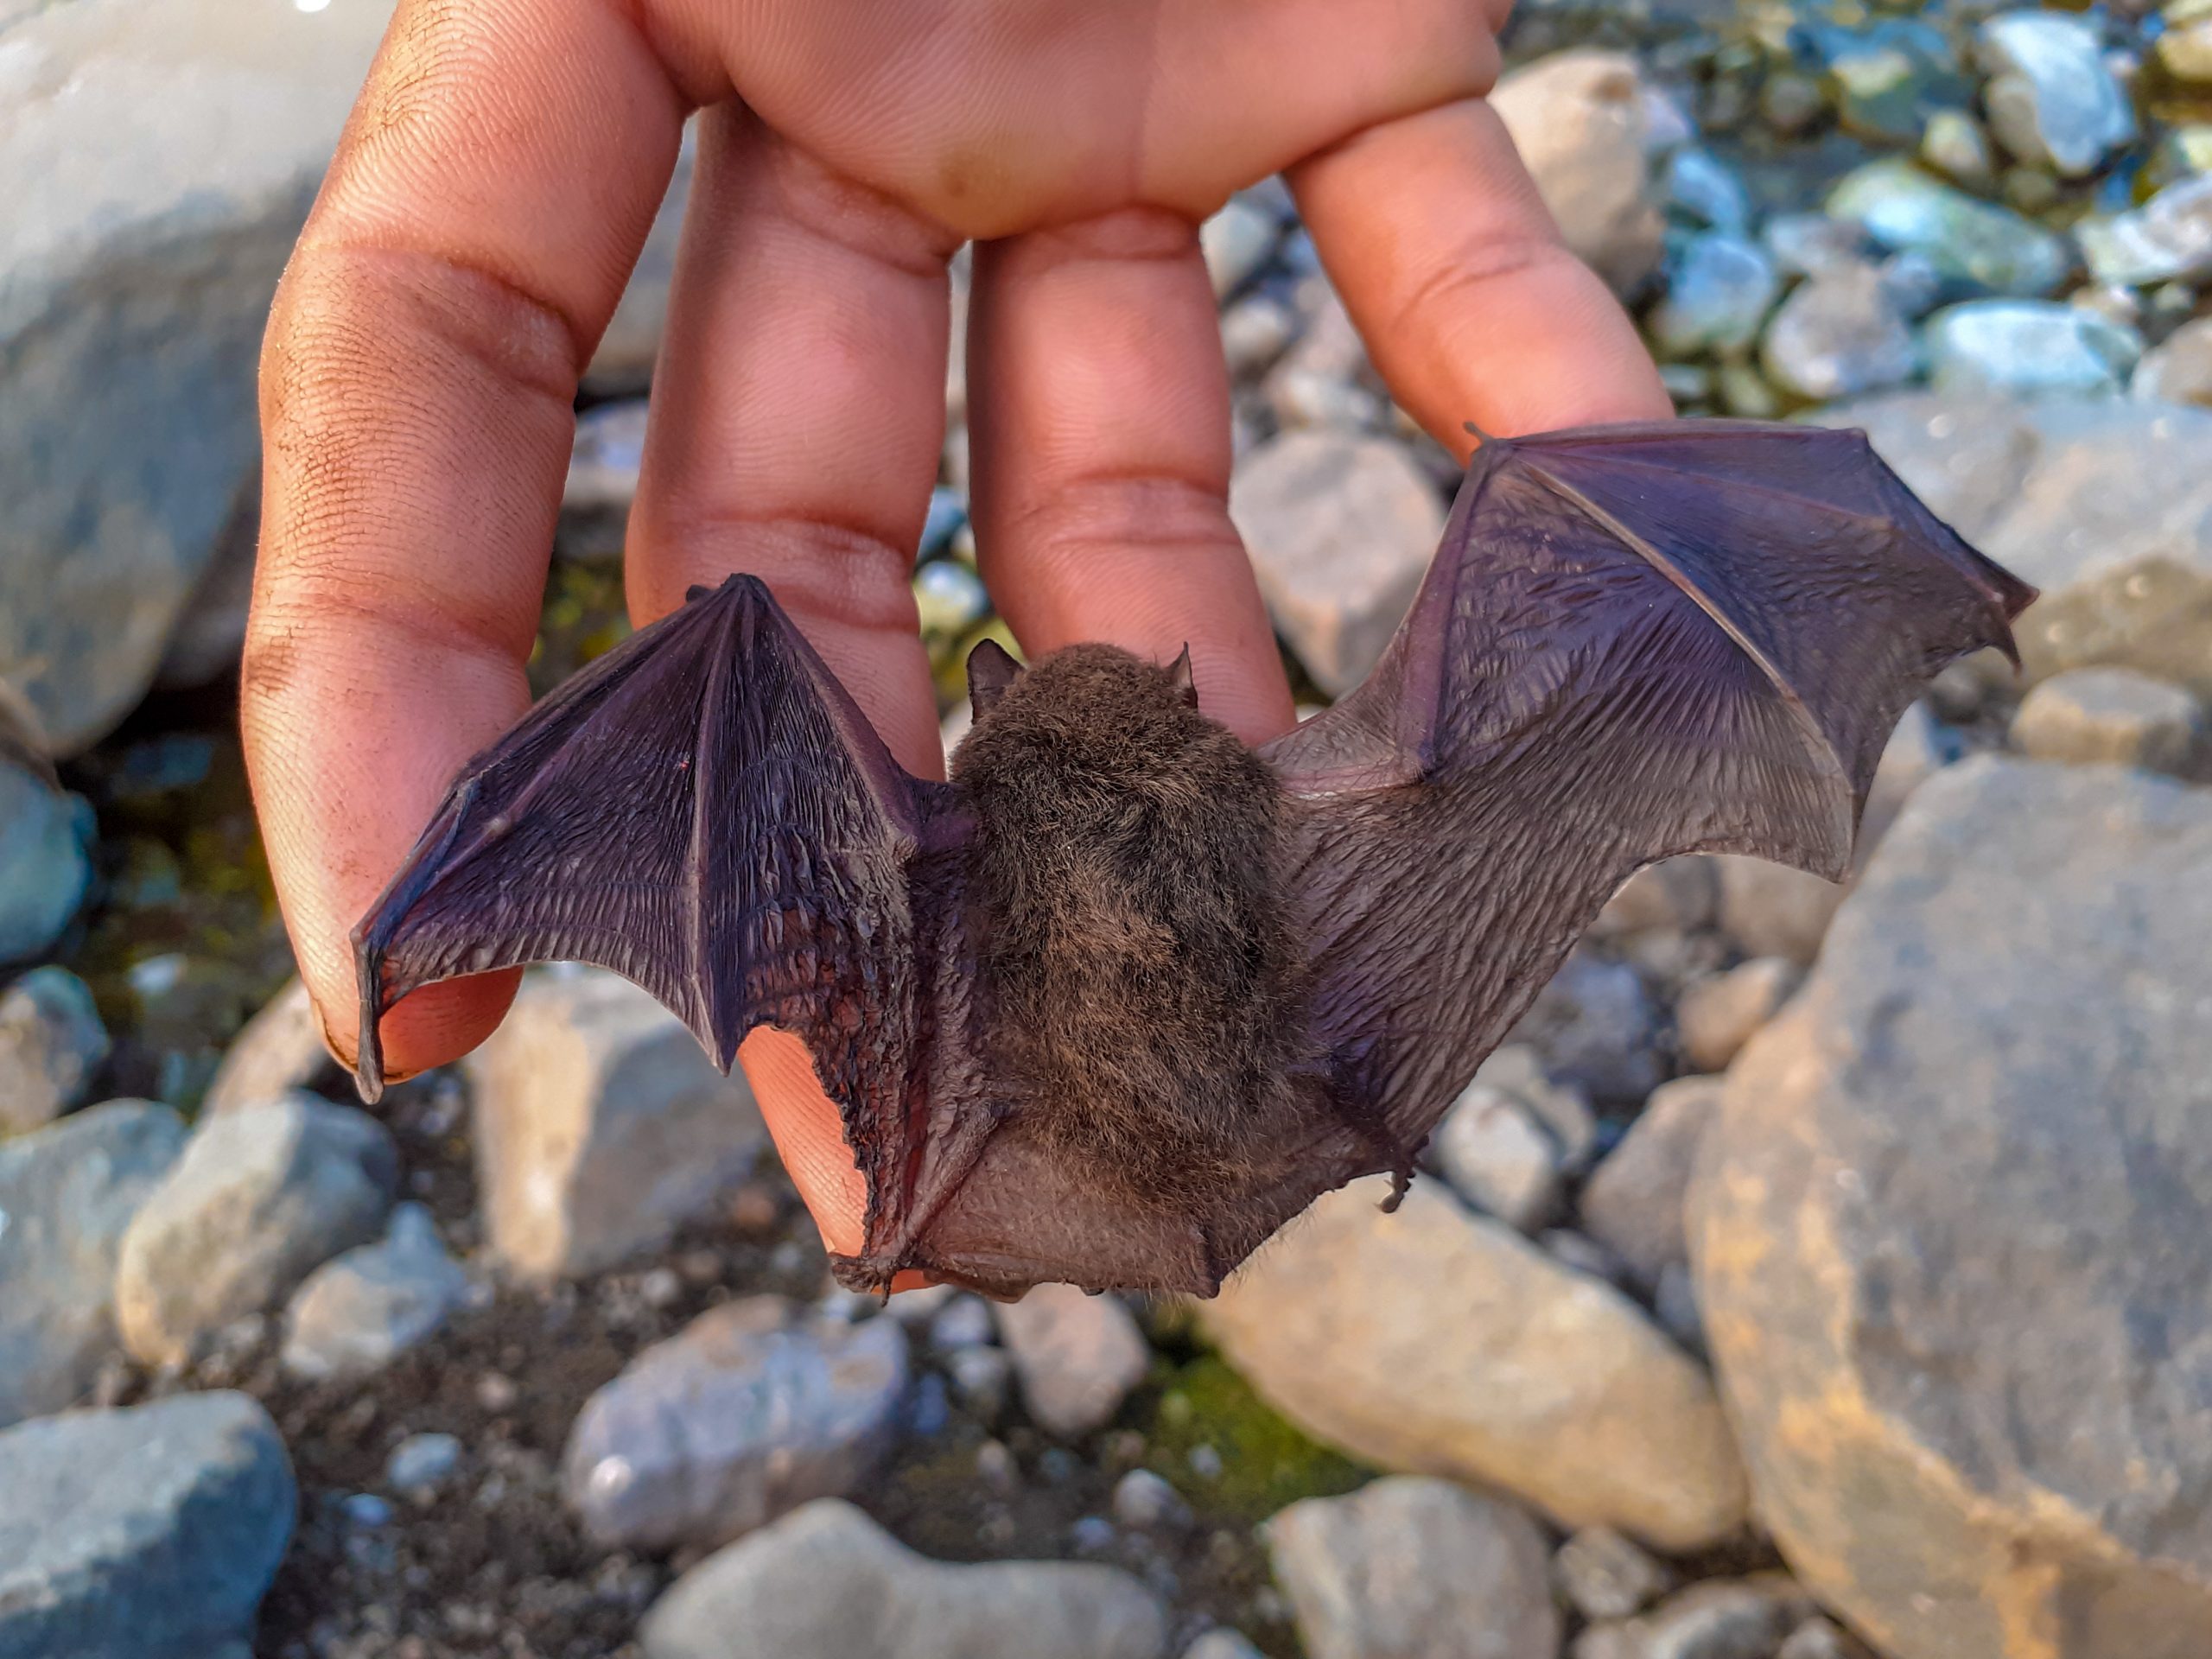 A bat in hand